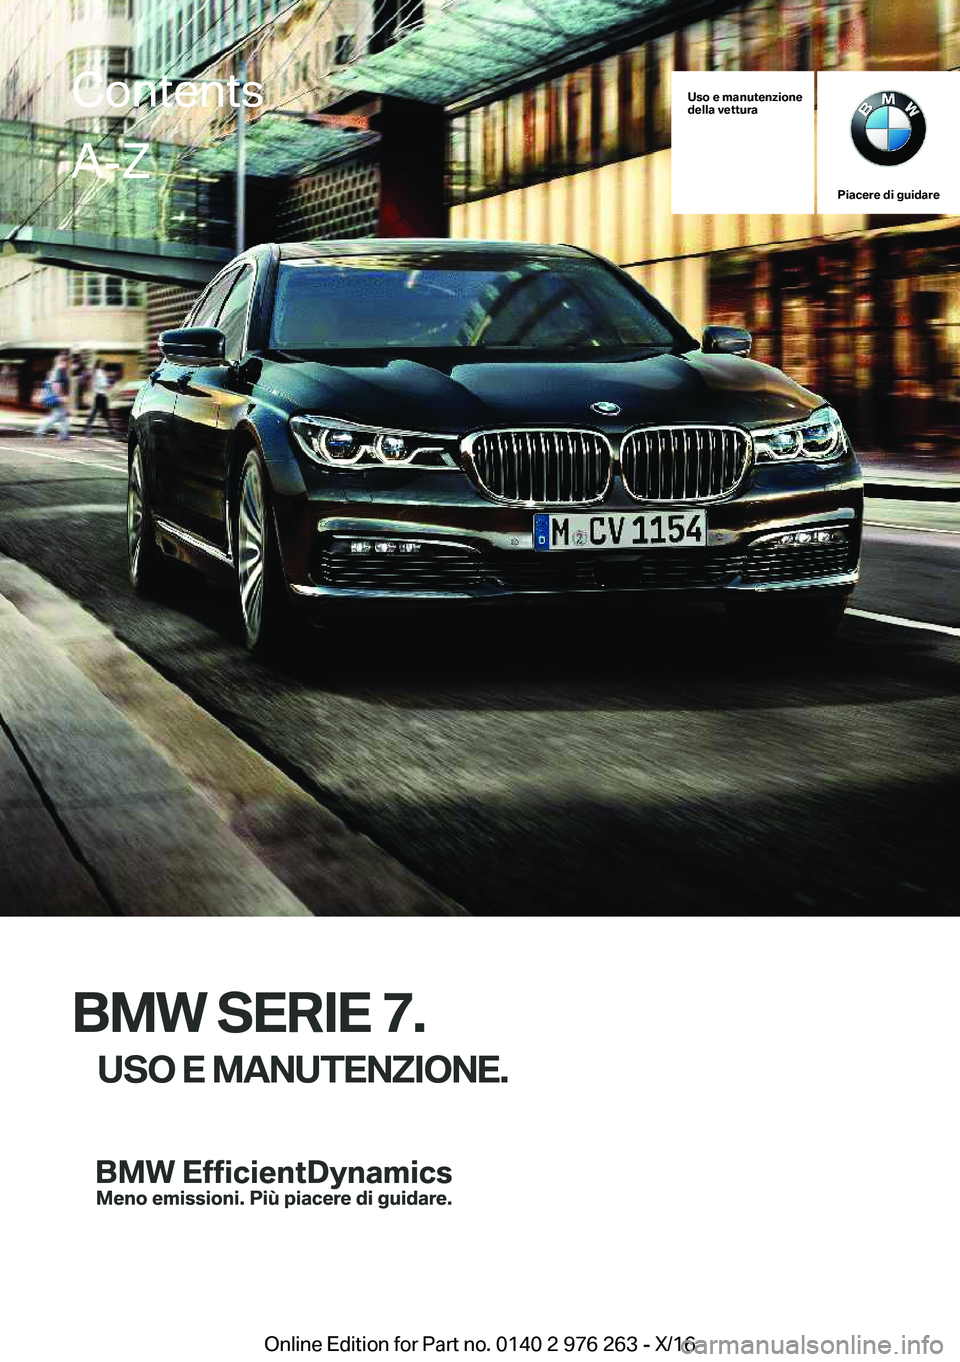 BMW 7 SERIES 2017  Libretti Di Uso E manutenzione (in Italian) �U�s�o��e��m�a�n�u�t�e�n�z�i�o�n�e
�d�e�l�l�a��v�e�t�t�u�r�a
�P�i�a�c�e�r�e��d�i��g�u�i�d�a�r�e
�B�M�W��S�E�R�I�E��7�.
�U�S�O��E��M�A�N�U�T�E�N�Z�I�O�N�E�.
�C�o�n�t�e�n�t�s�A�-�Z
�O�n�l�i�n�e